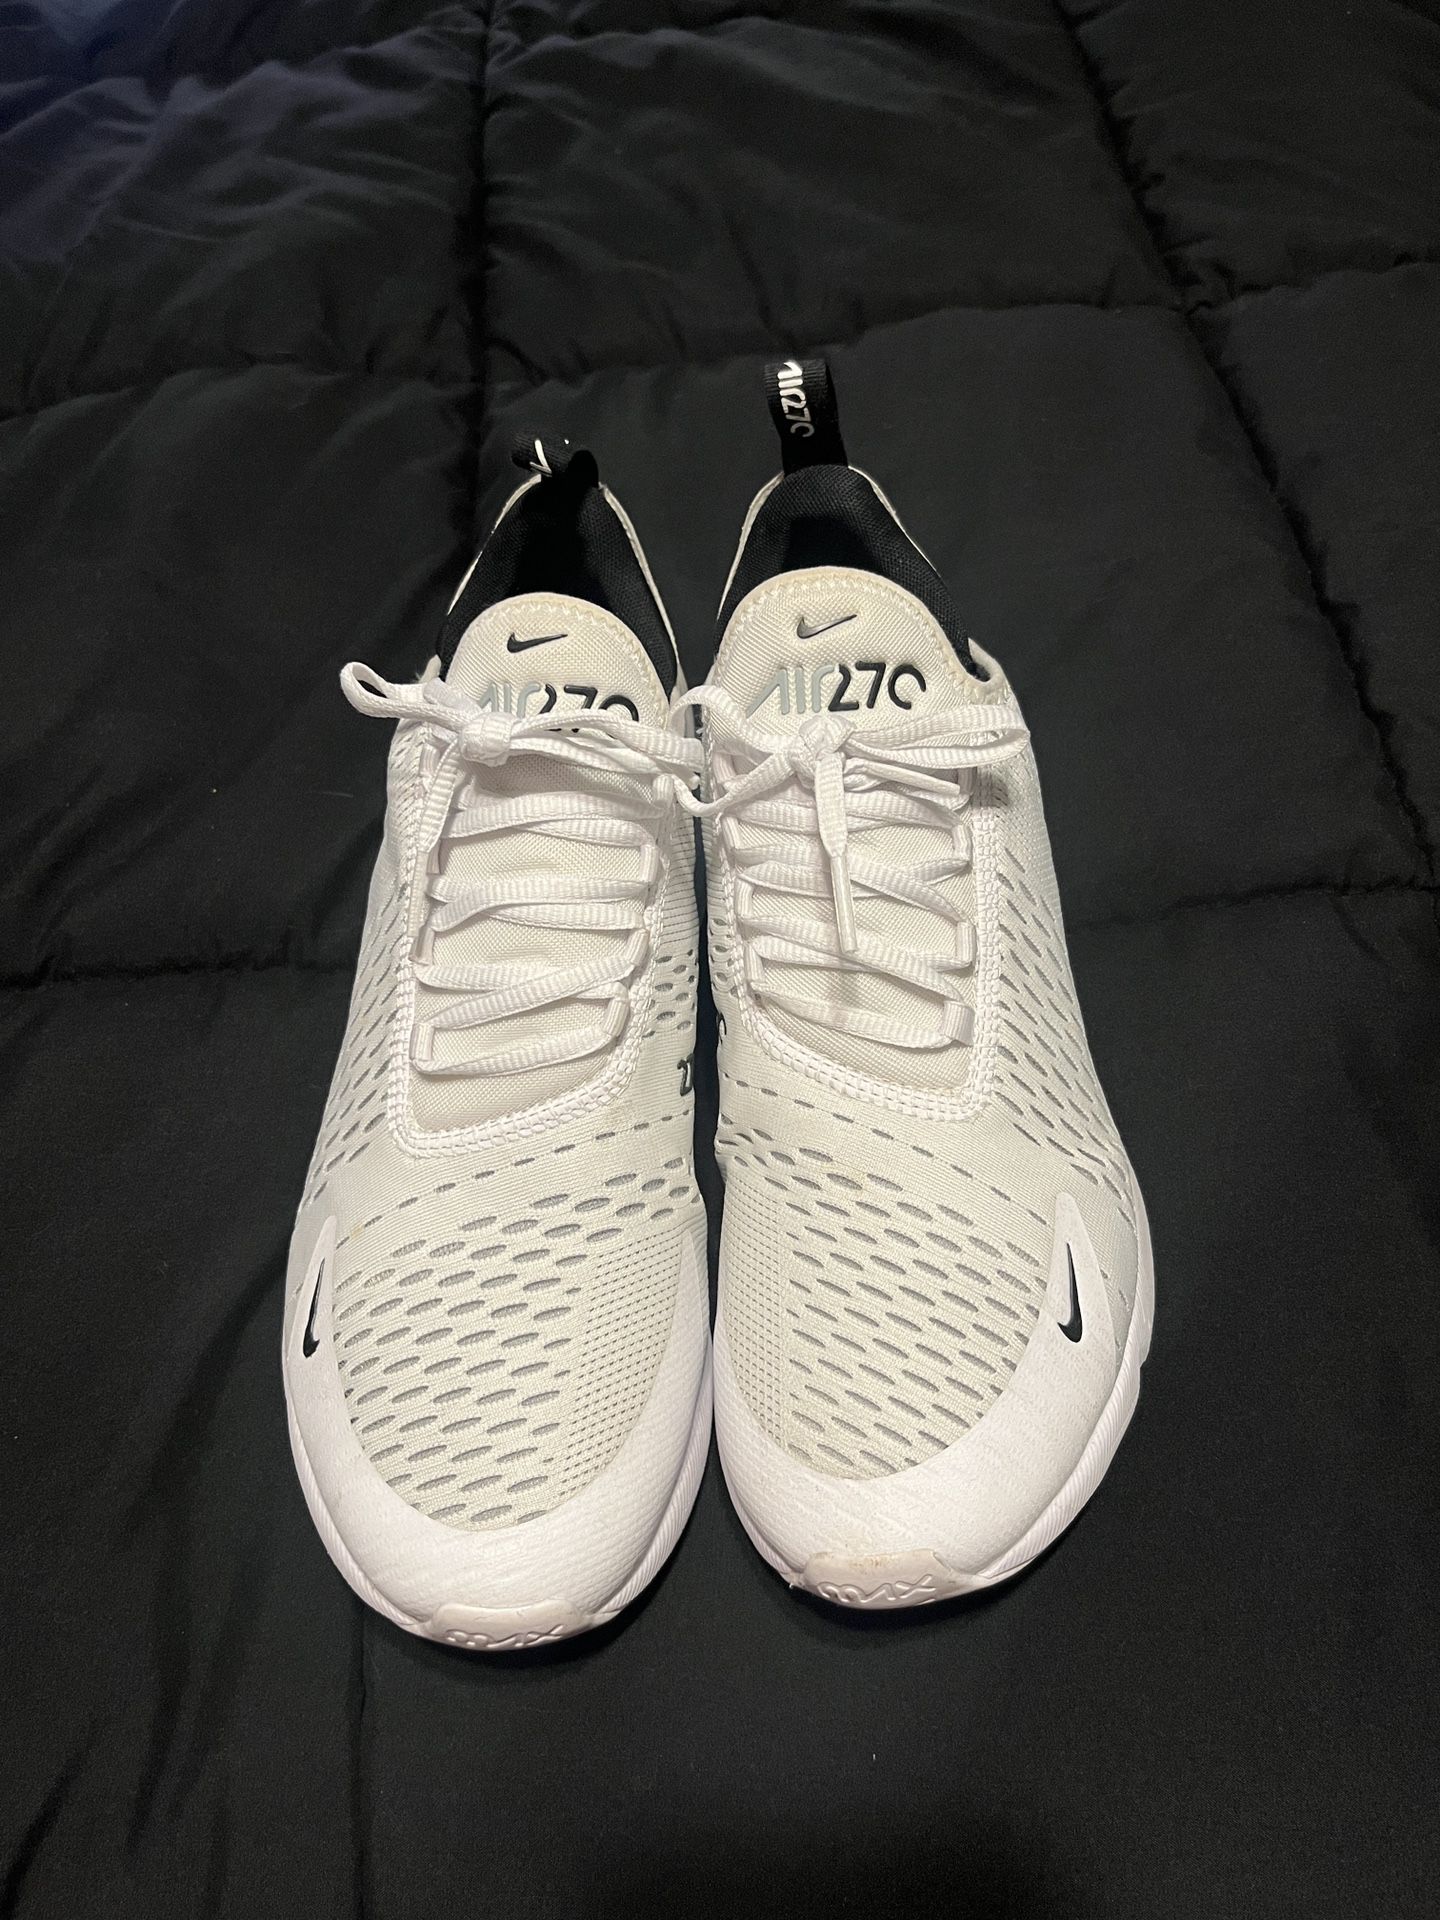 White Nike Airmax 270 (men’s Size 9.5)